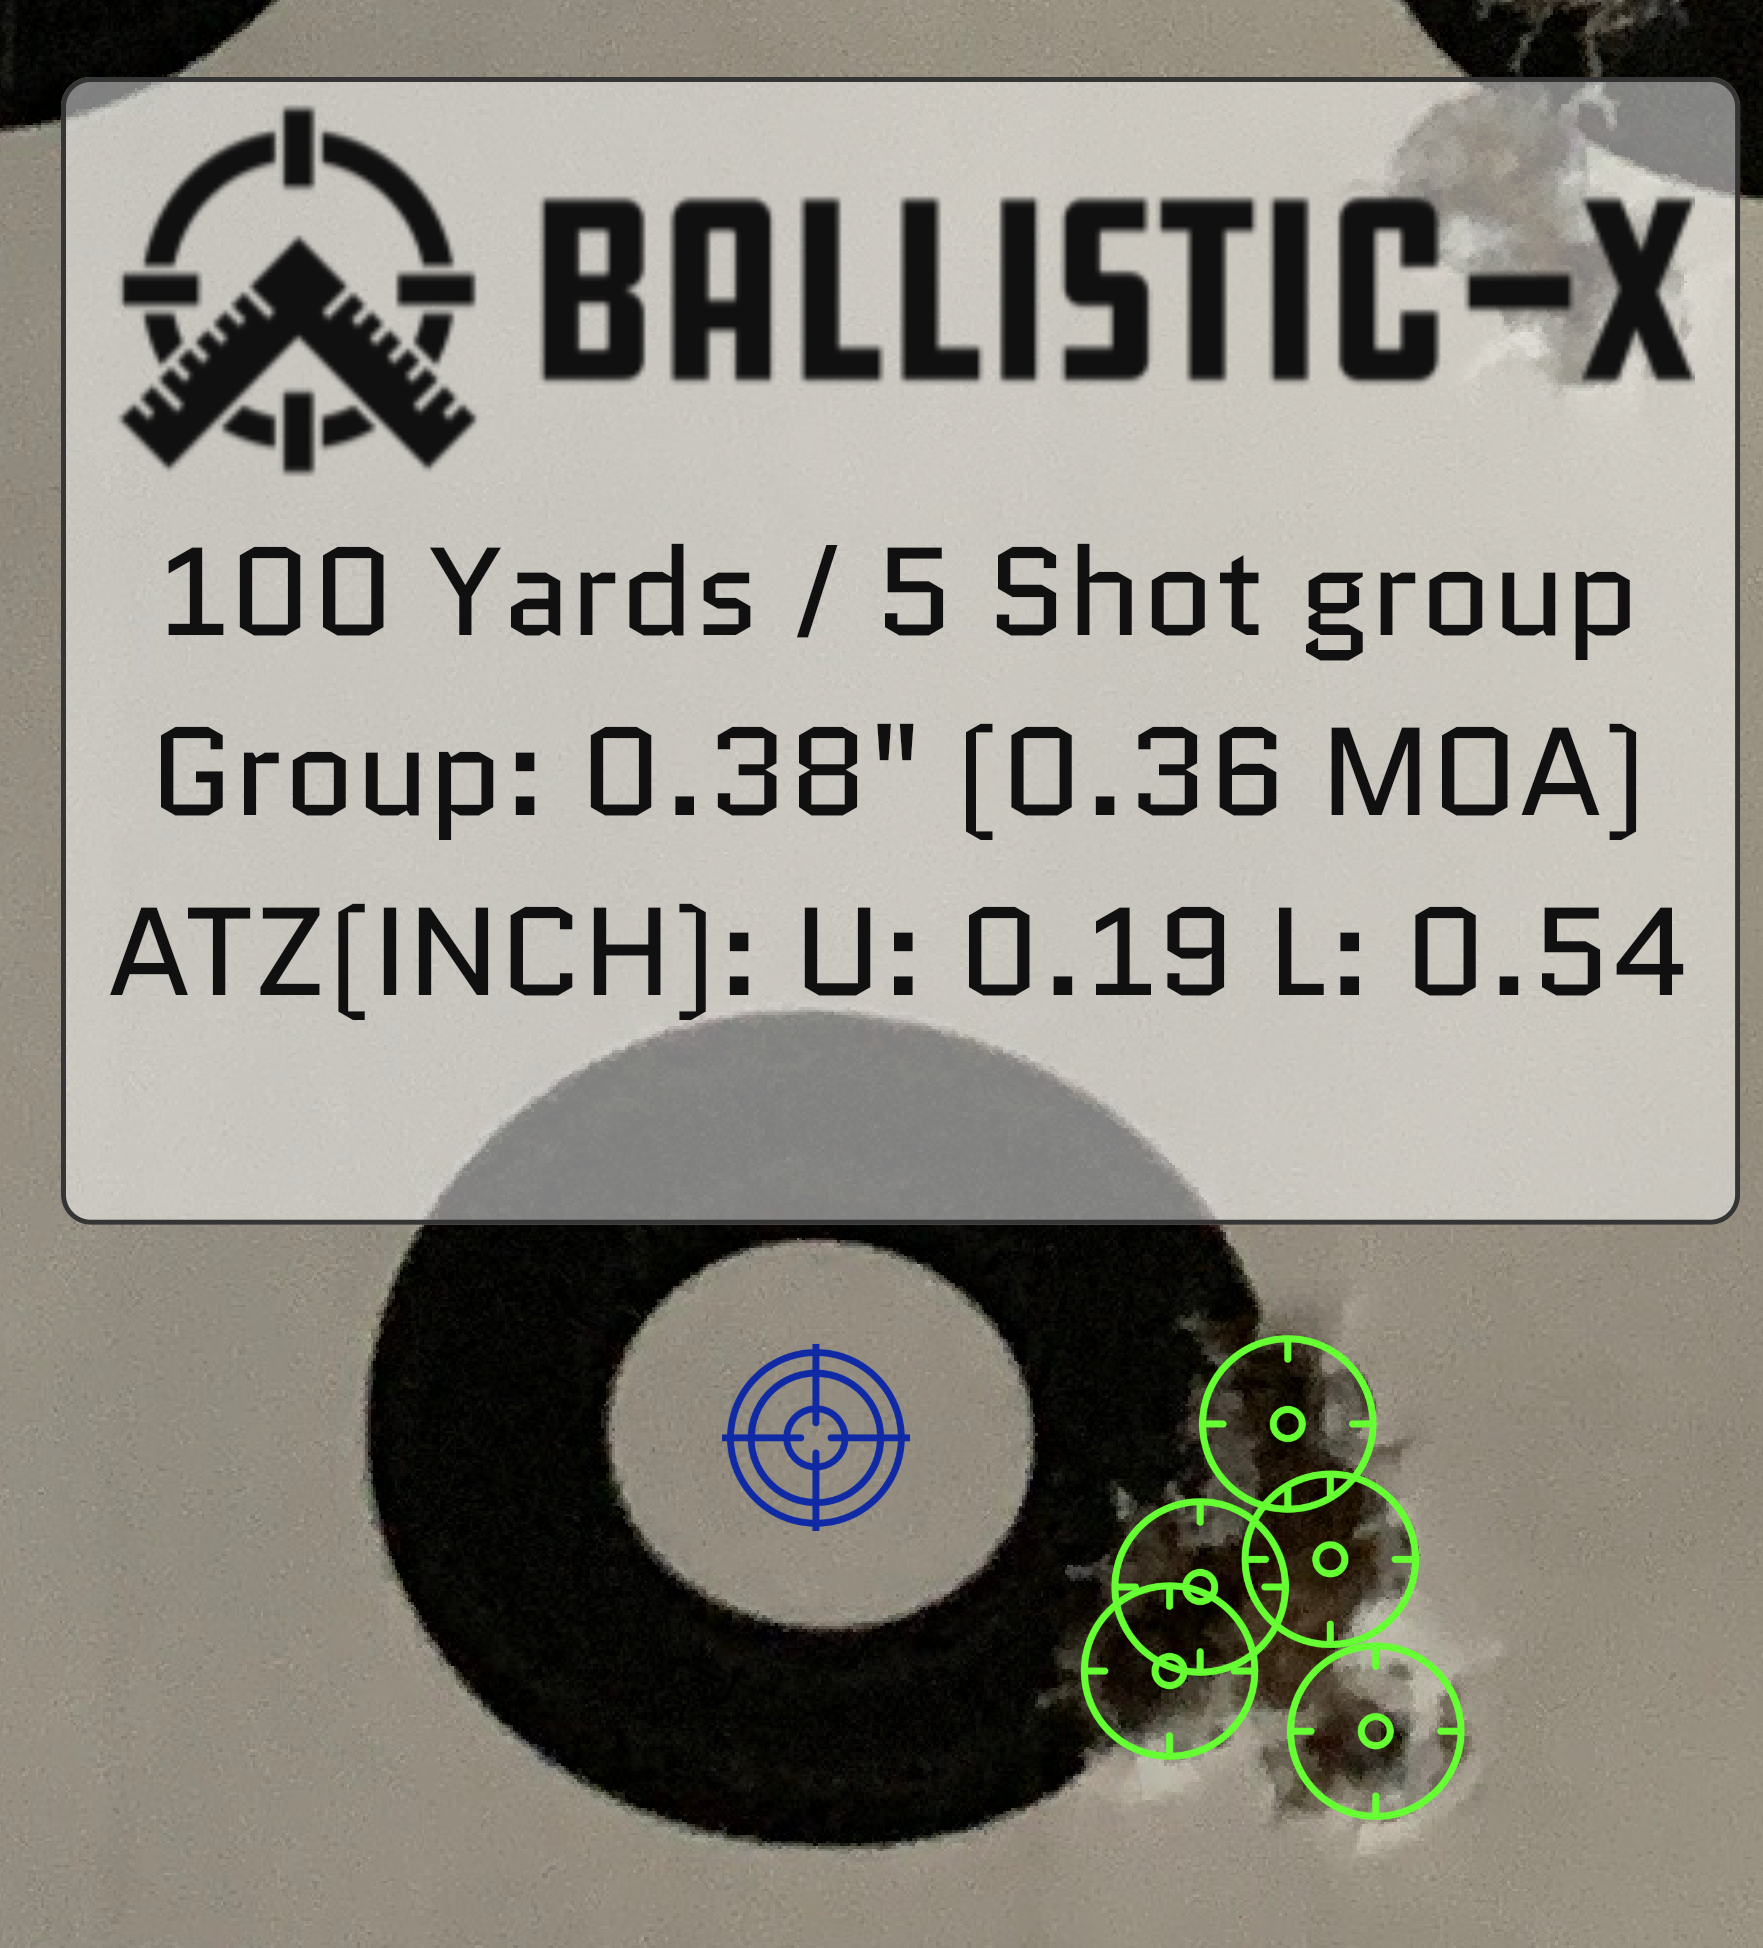 Ballistic-X-Export-2020-05-08 20:25:29.263993.png